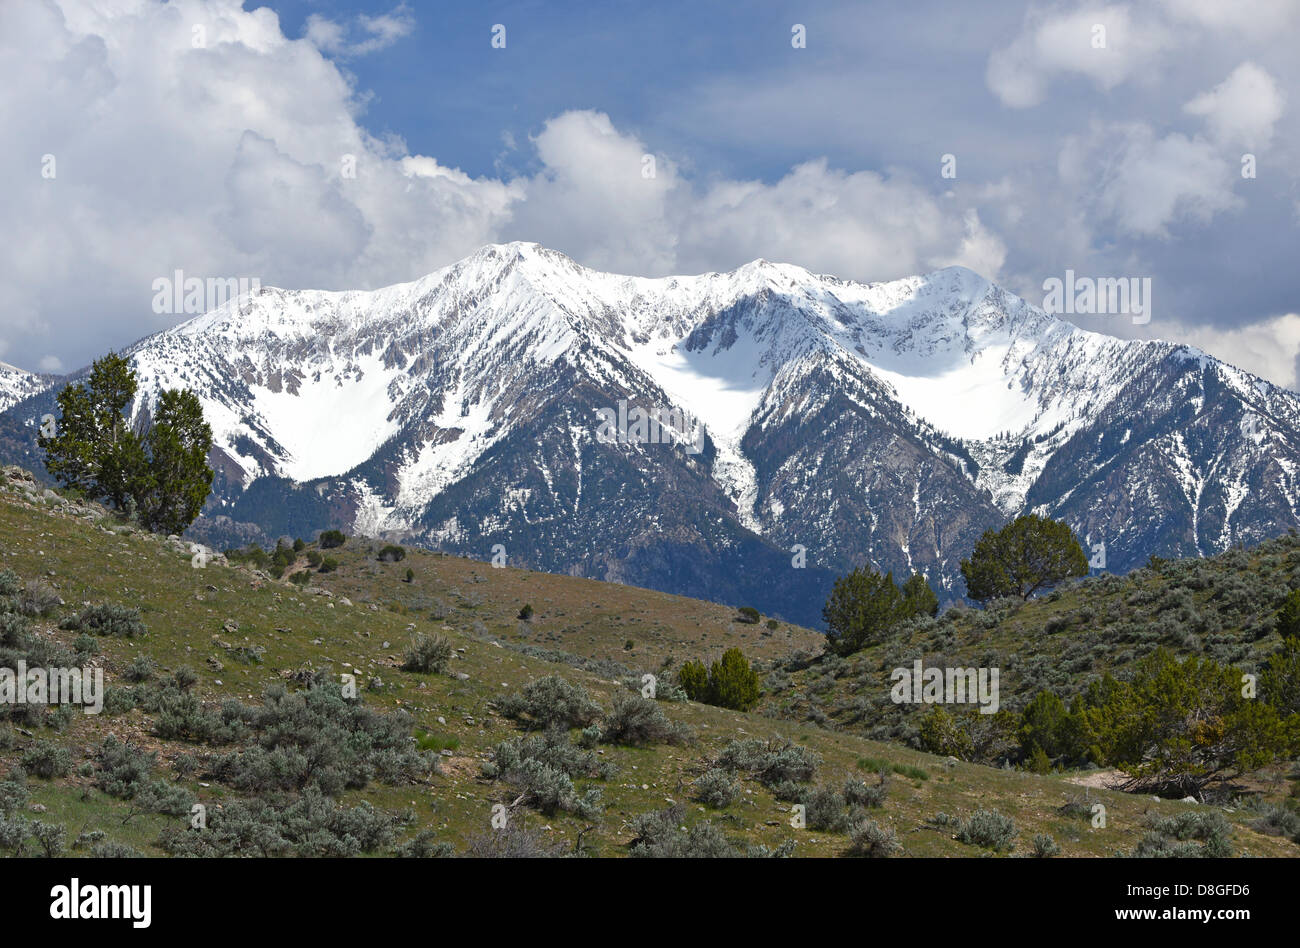 Mt. Nebo in Utah's Wasatch Range. Stock Photo